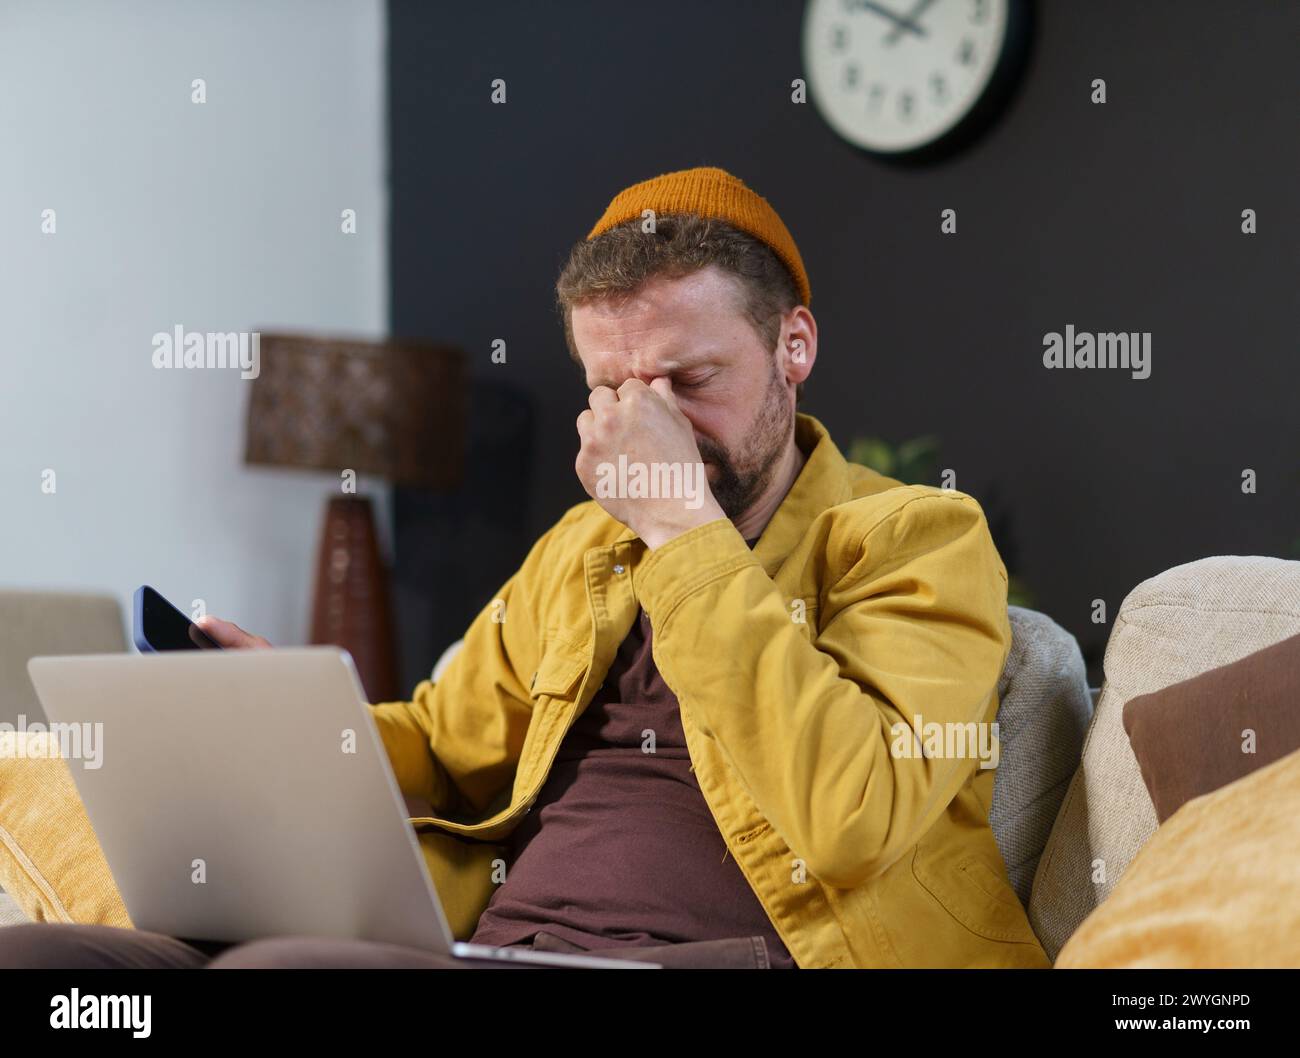 Un uomo con una giacca gialla è seduto su un divano con la testa tra le mani. Sta guardando un portatile ed è in stato di difficoltà Foto Stock